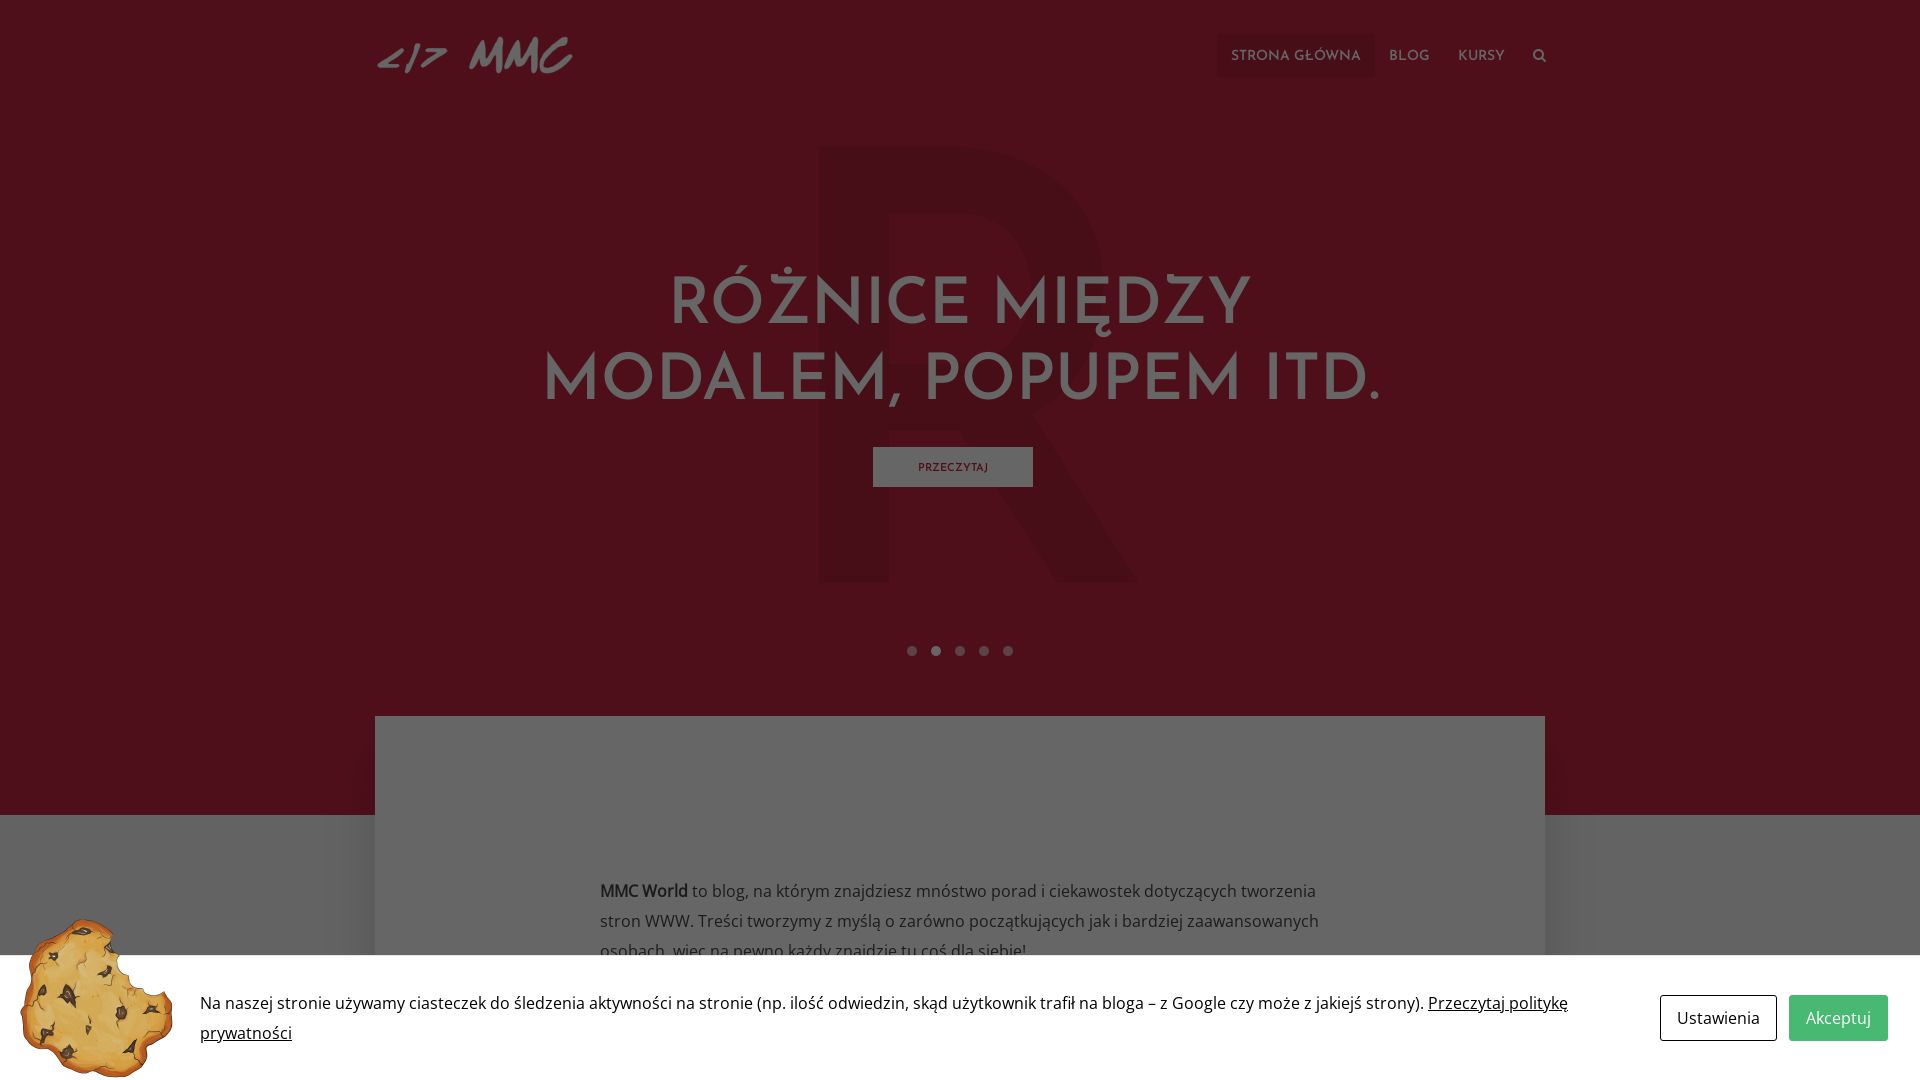 网站状态 mmcworld.pl 是  在线的